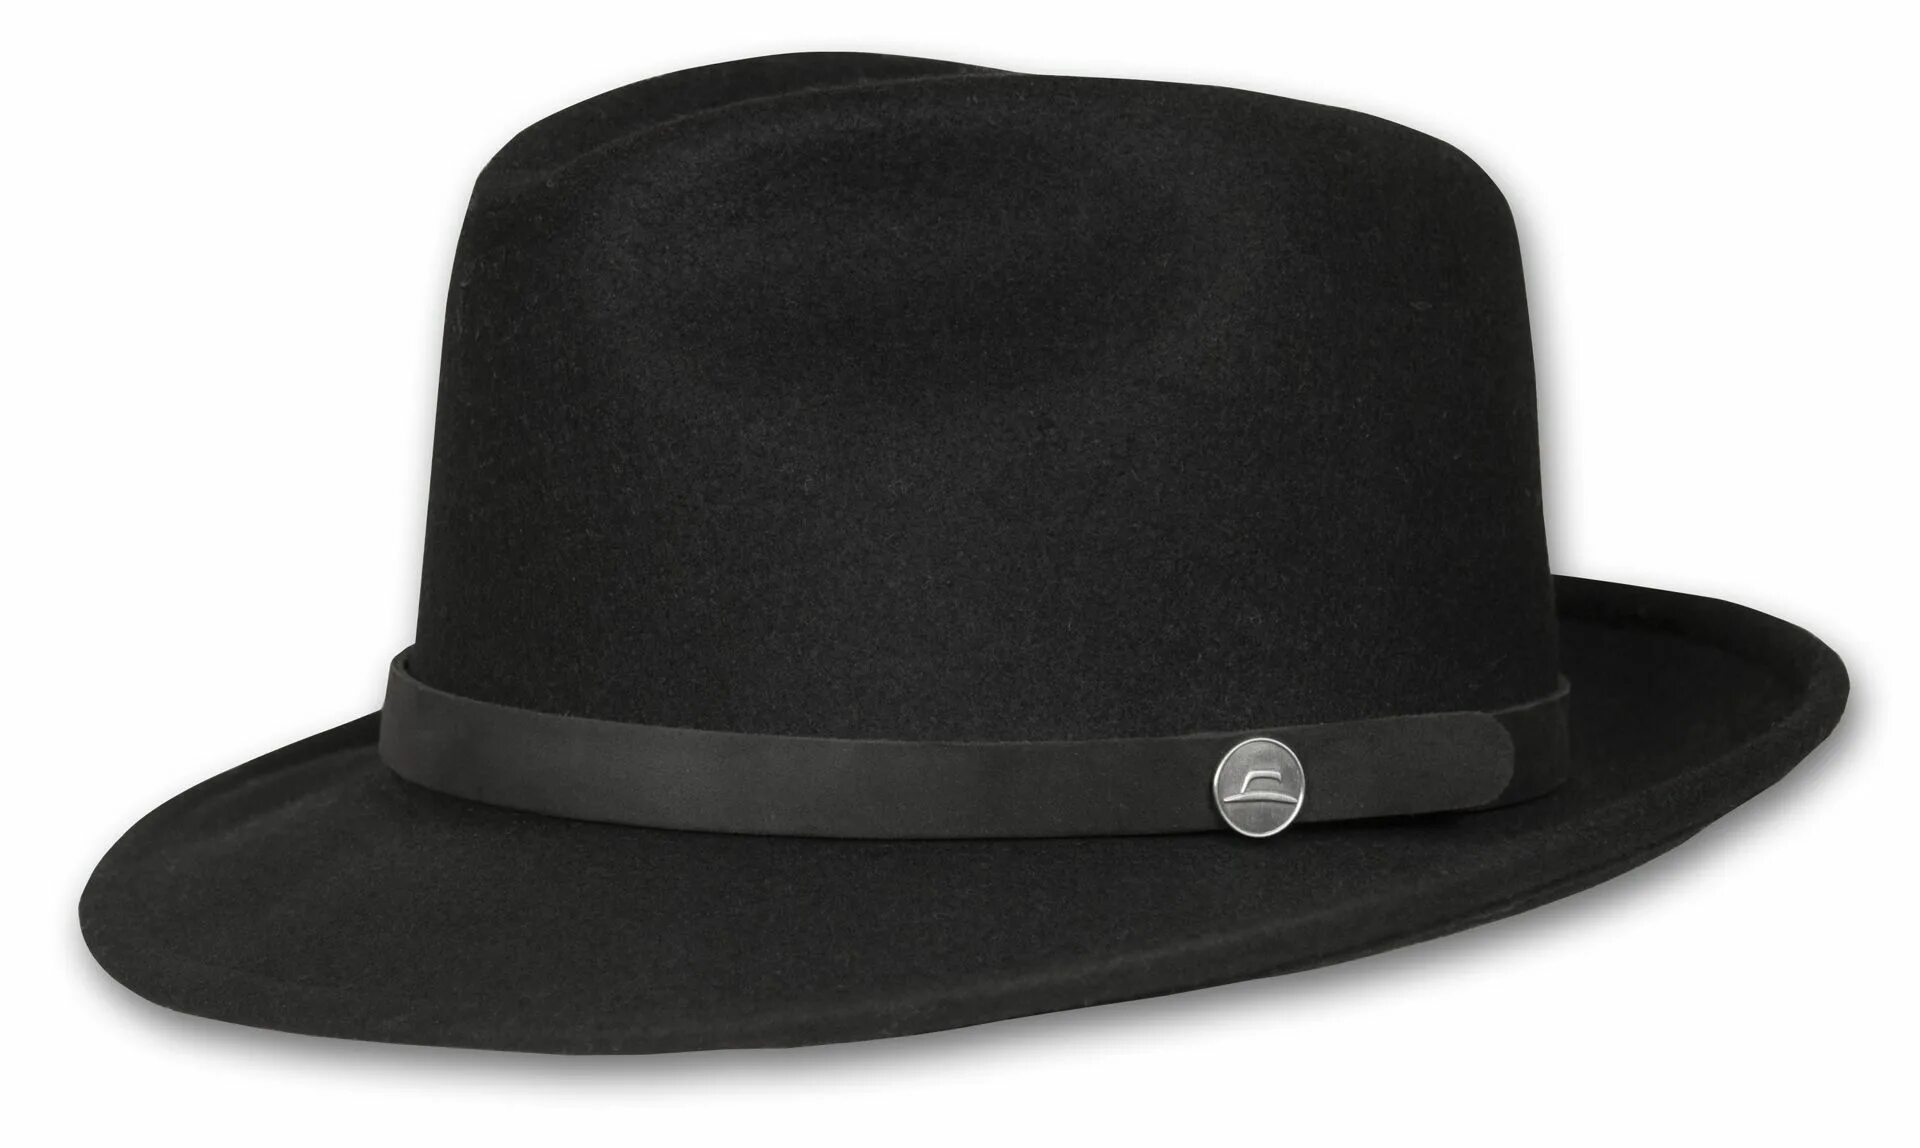 Augen hat. Фетровая шляпа Федора. Fedora шляпа мужская широкополая. Еврейская фетровая шляпа Федора. Фетровая шляпа Федора Бове.